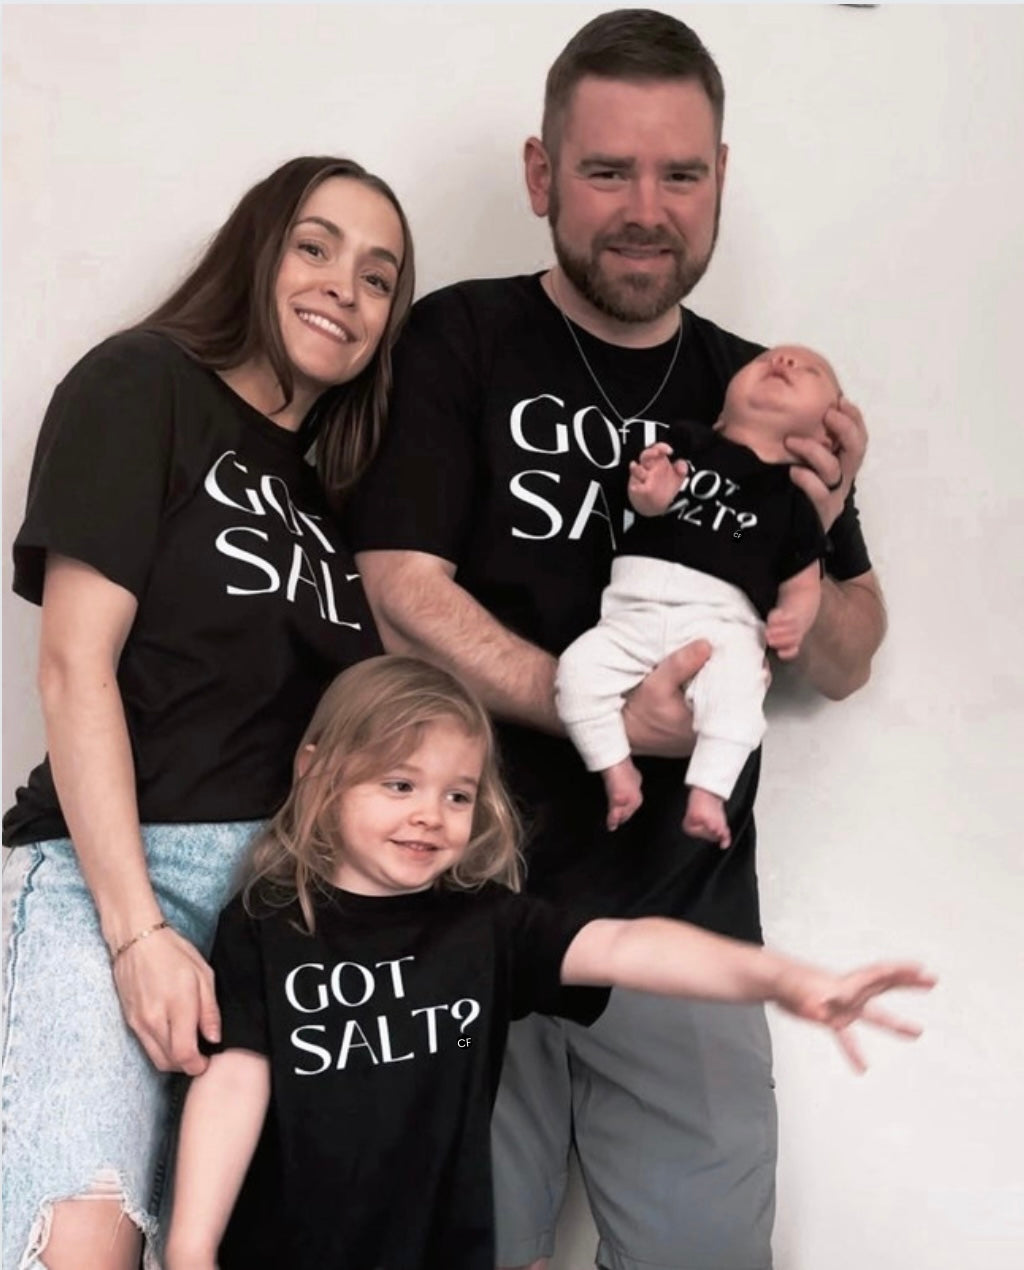 Got Salt? T-shirt